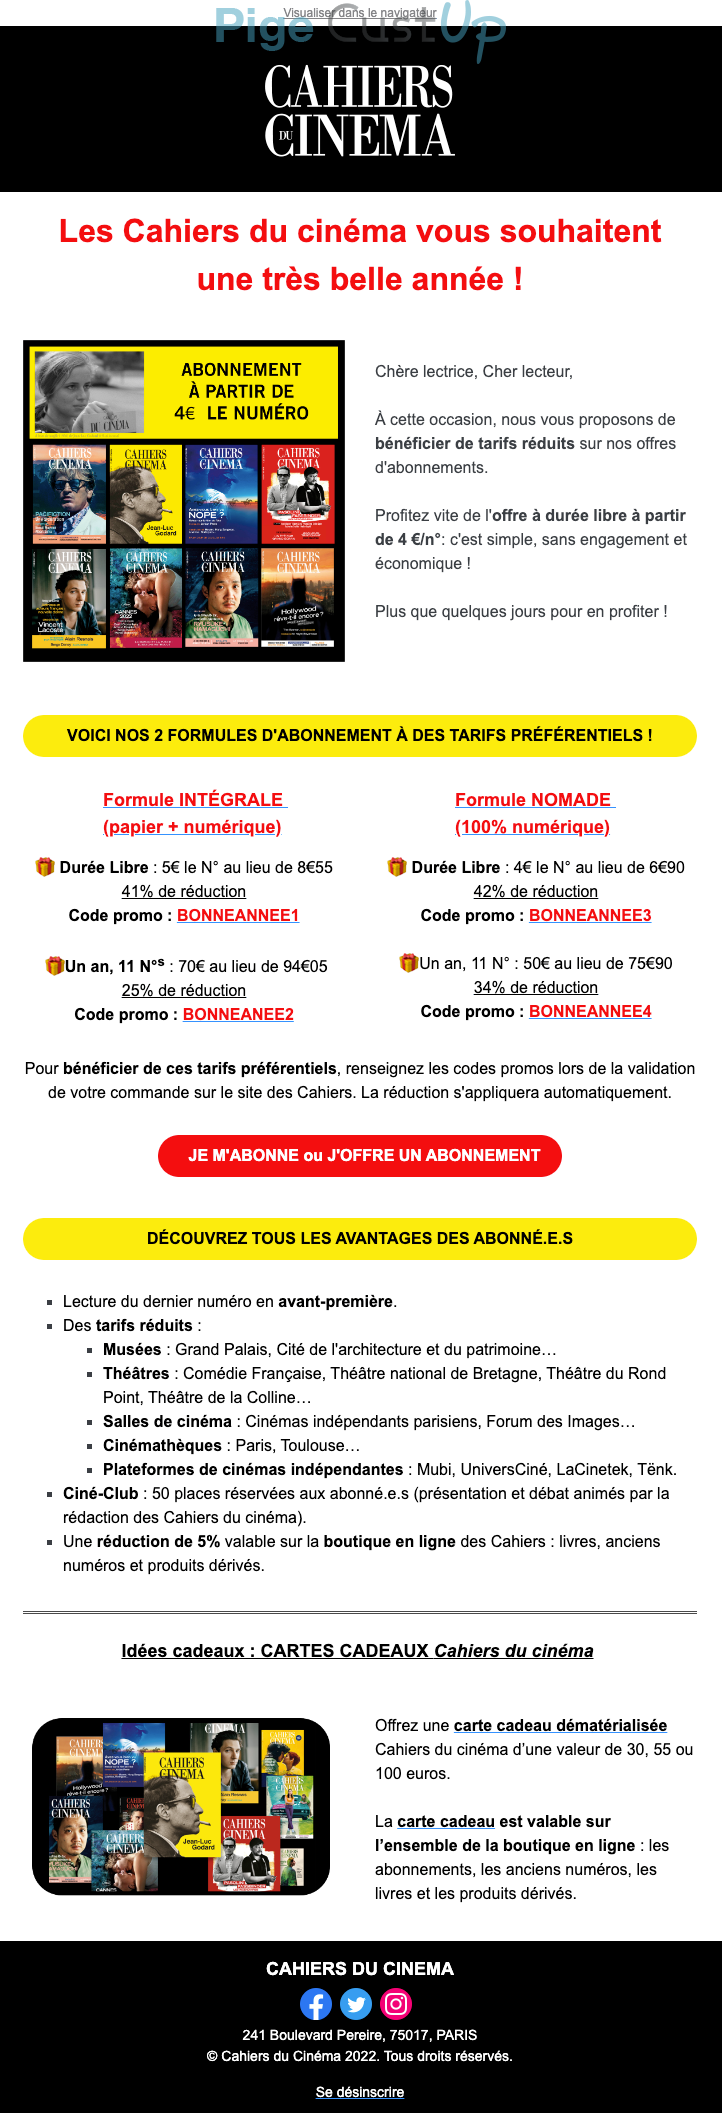 Exemple de Type de media  e-mailing - Cahiers du Cinéma - Marketing relationnel - Calendaire (Noël, St valentin, Vœux, …)